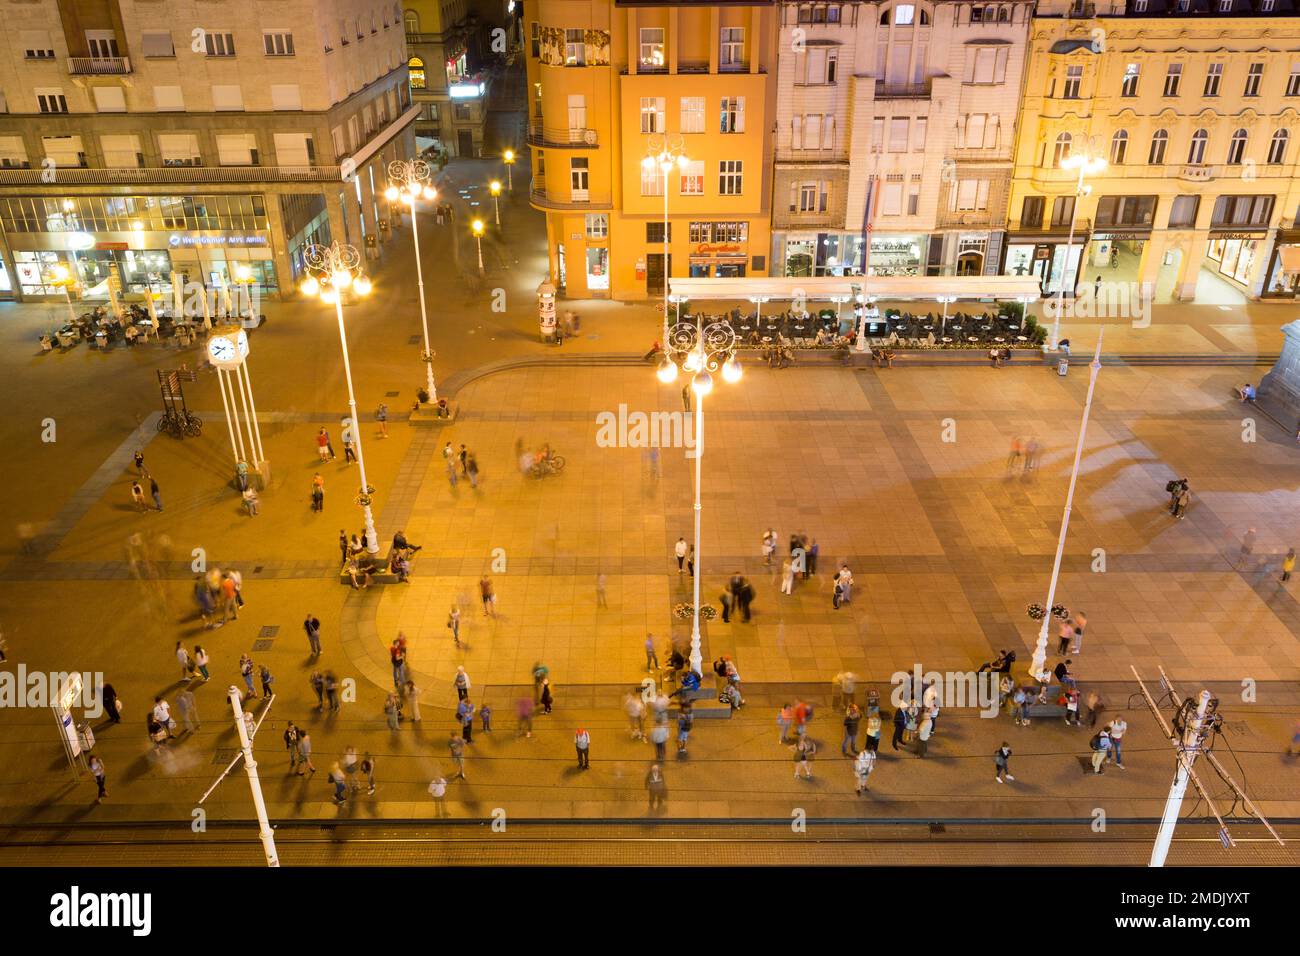 Kroatien, Zagreb, der Hauptplatz - Trg bana Jelacica, bei Nacht. Stockfoto